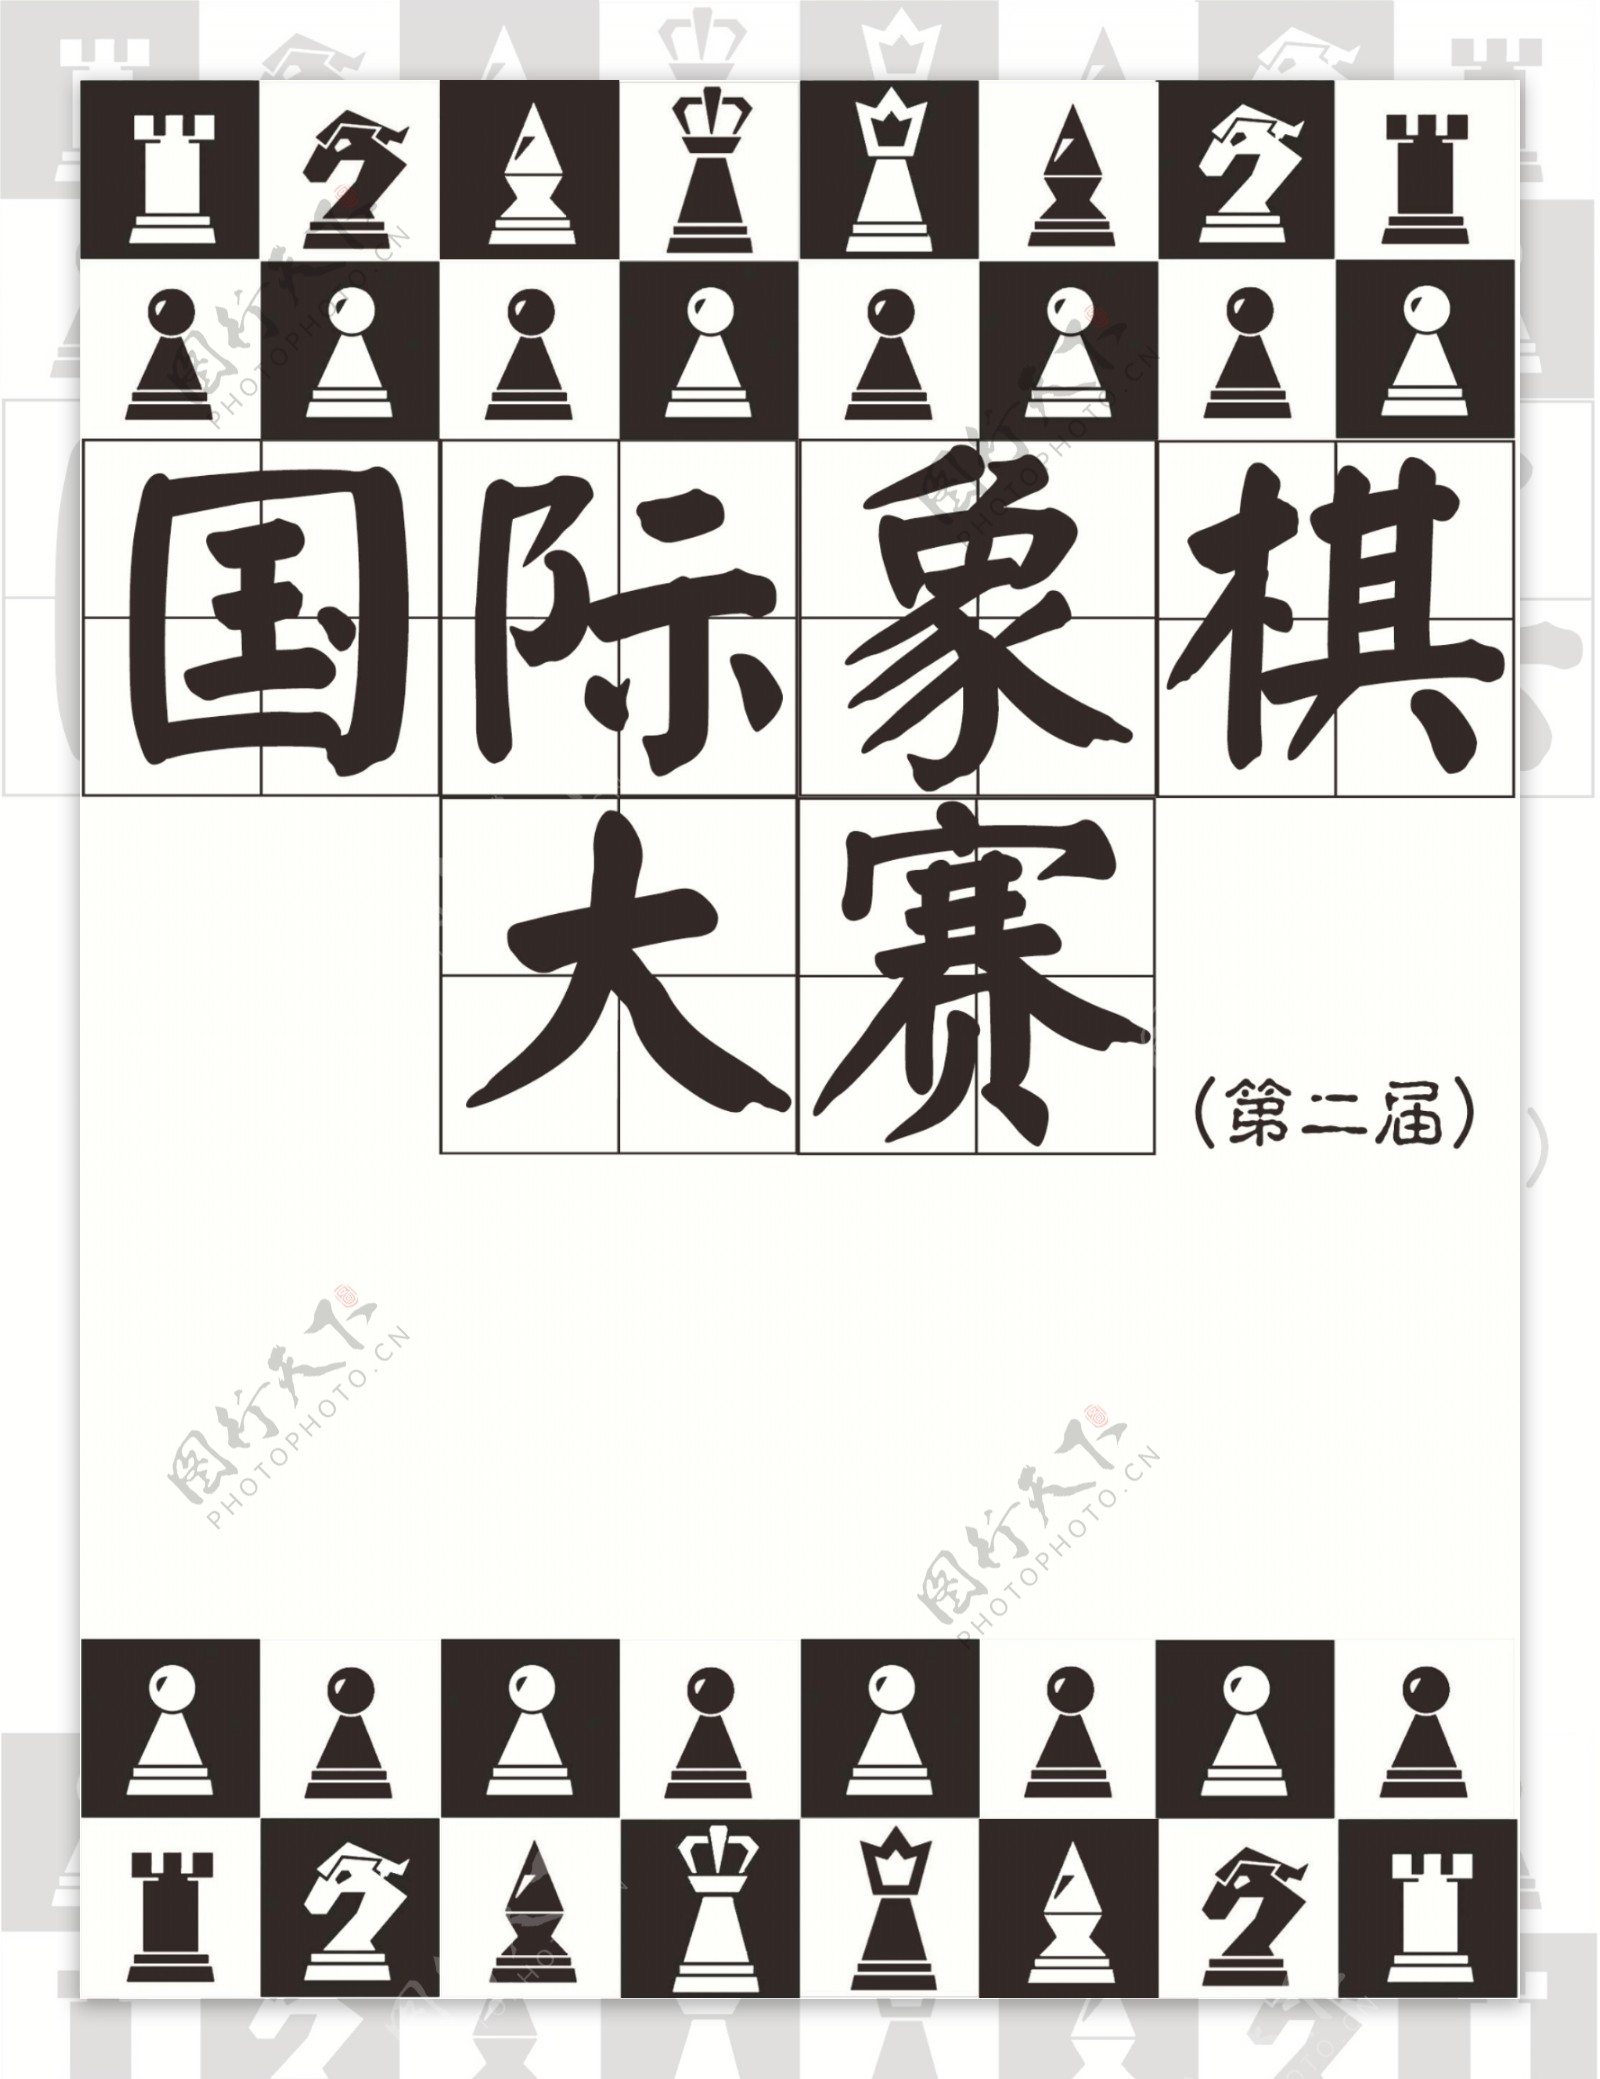 国际象棋海报